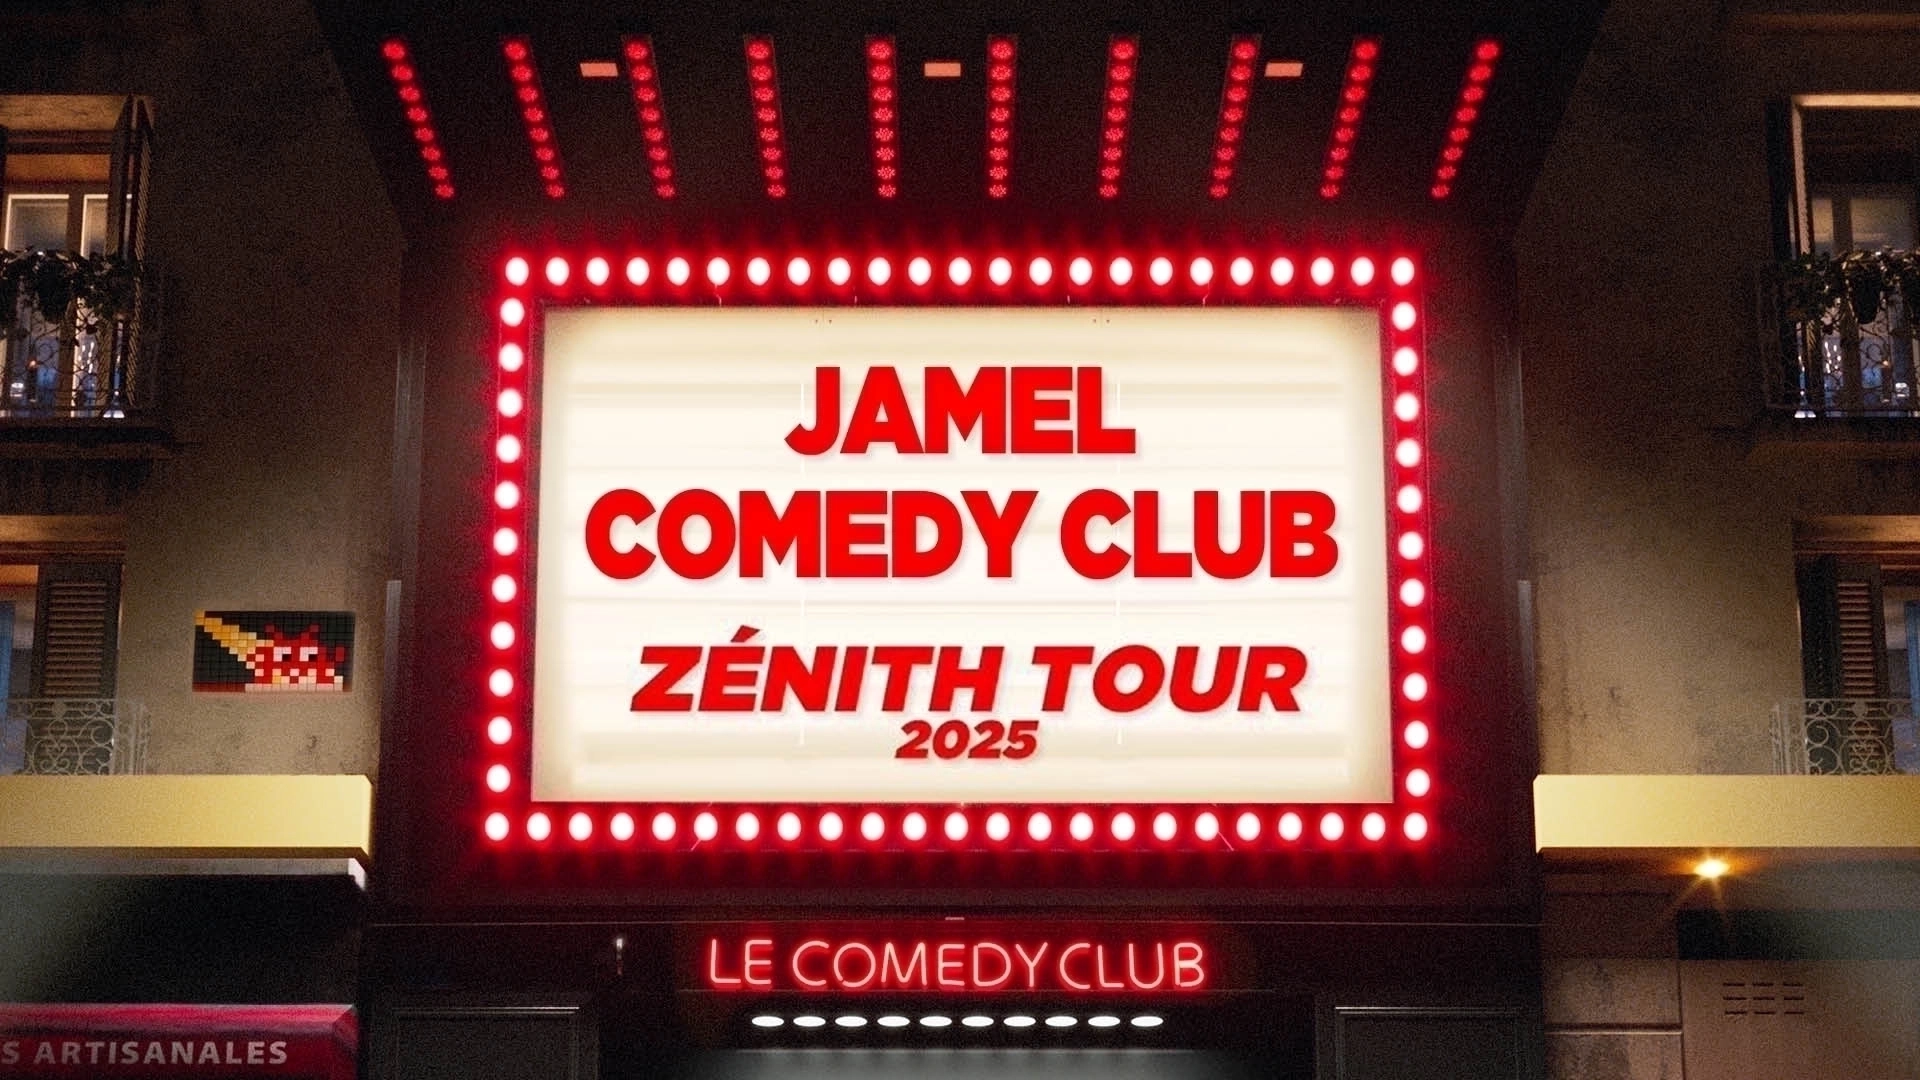 Jamel Comedy Club Zenith Tour 2025 in der L'amphitheatre Tickets